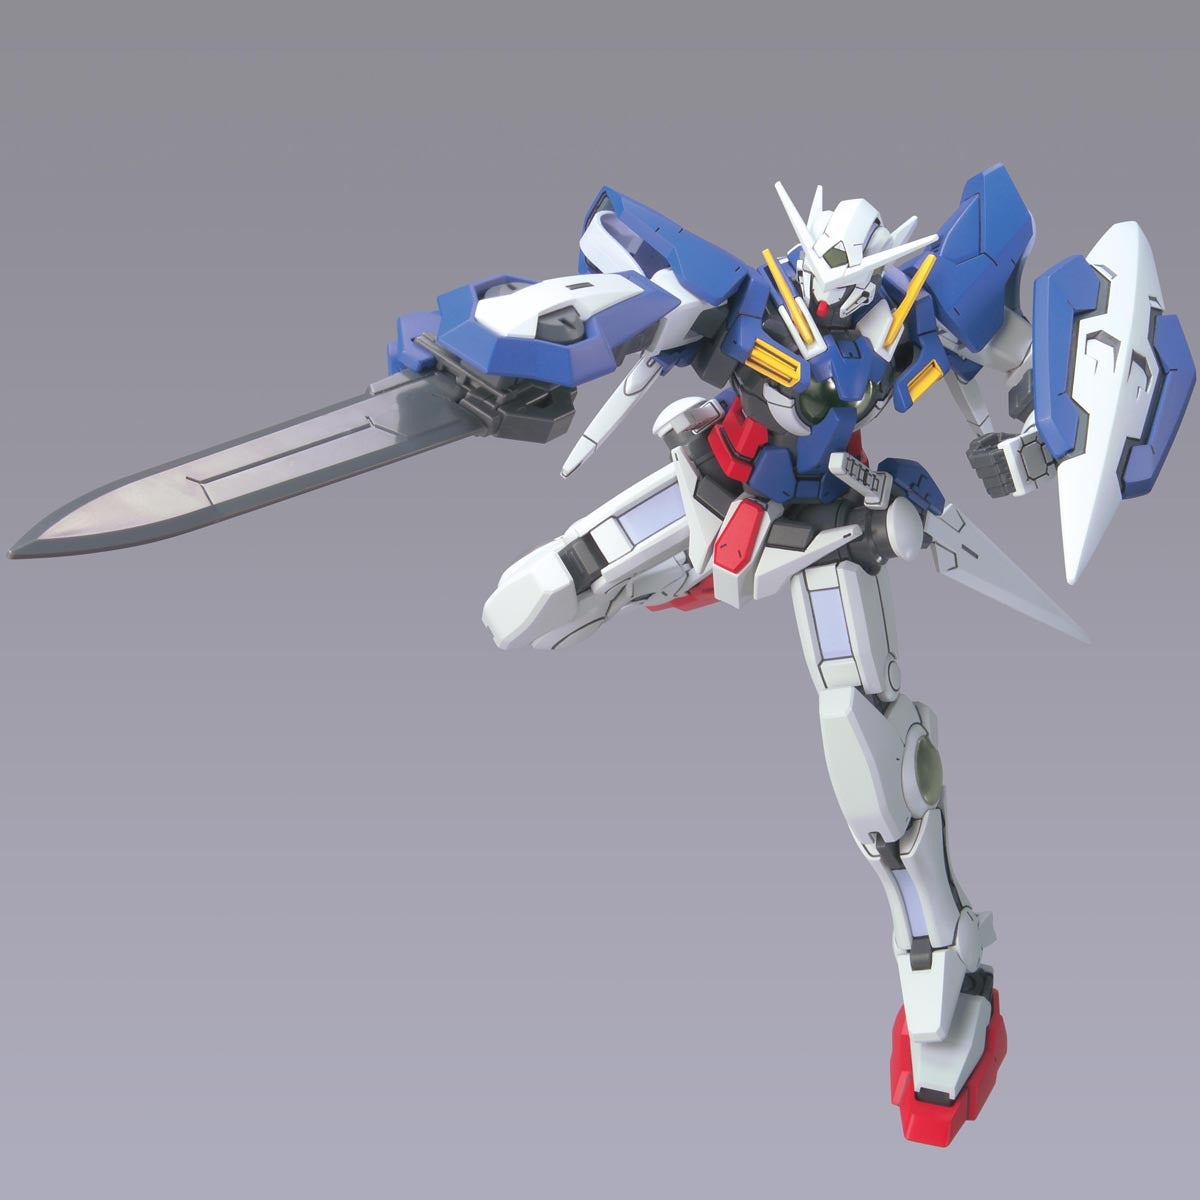 HG Gundam Exia Repair II 1/144 - gundam-store.dk